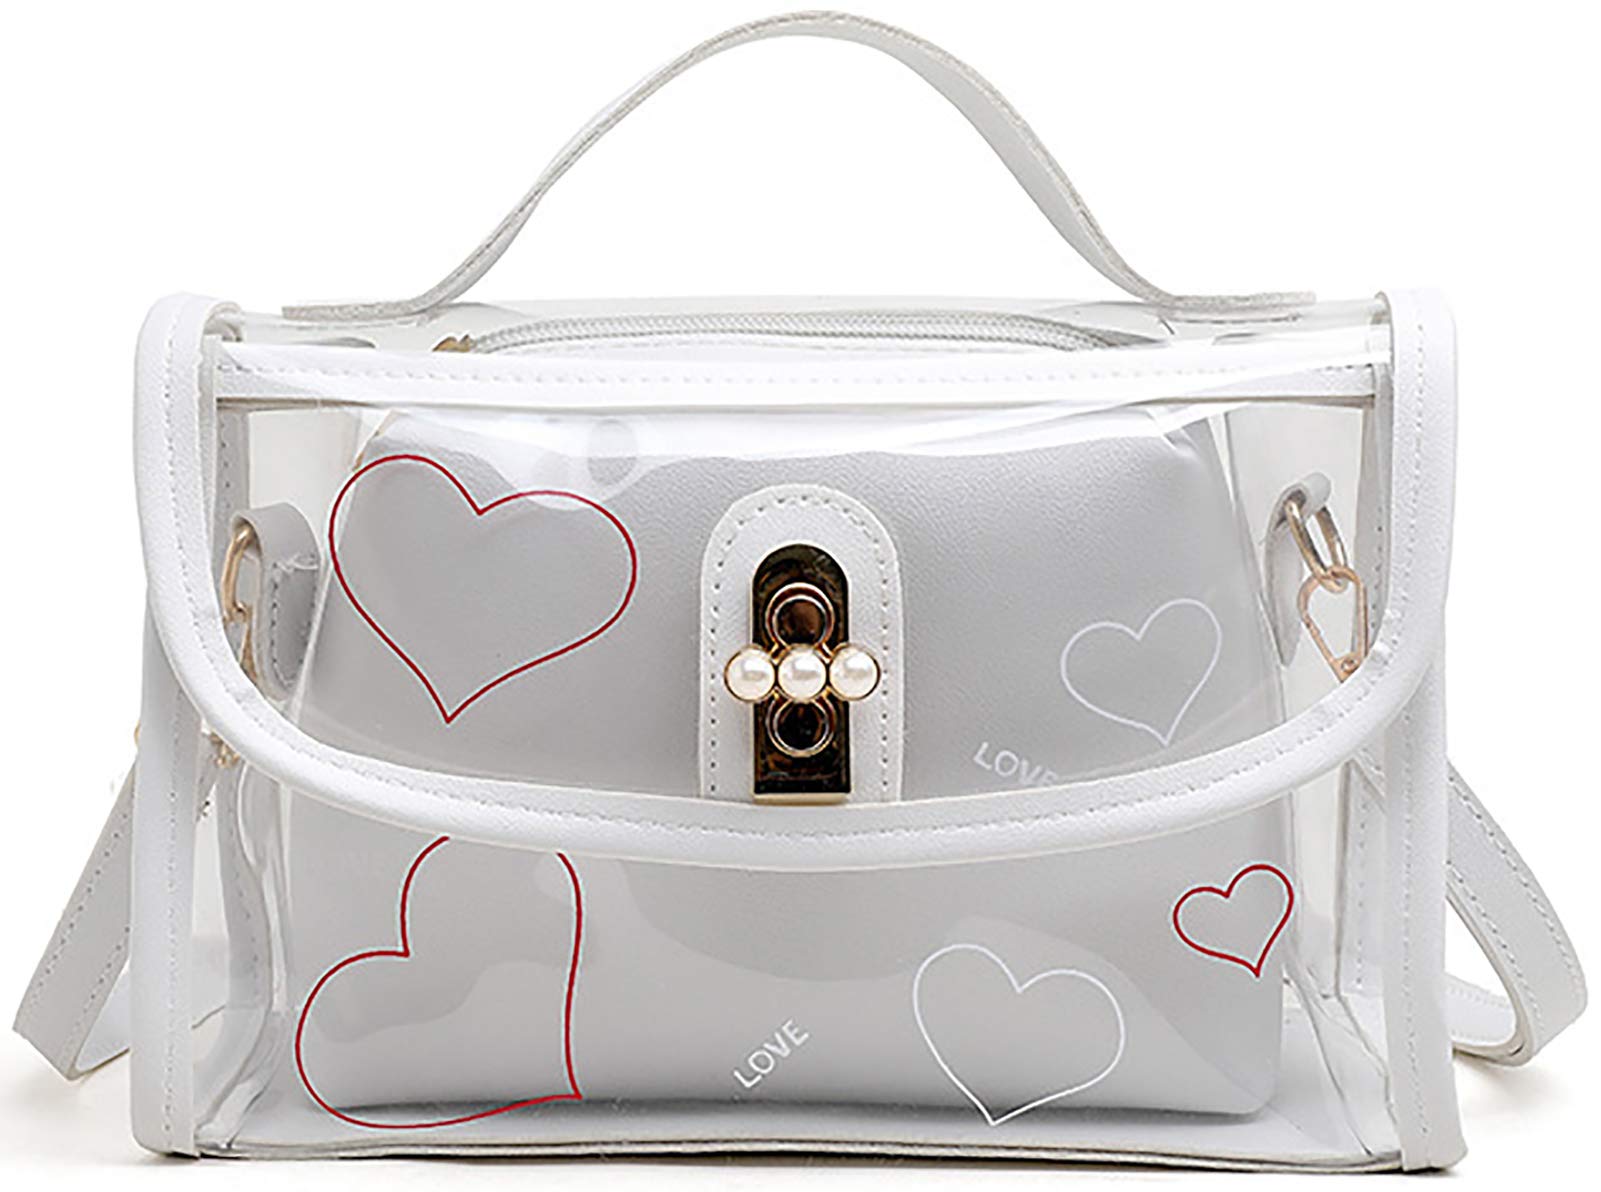 QZUnique Women's Fashion Jelly Color Handbag Candy Color Transparent Tote Bag Crossbody Shoulder Bag